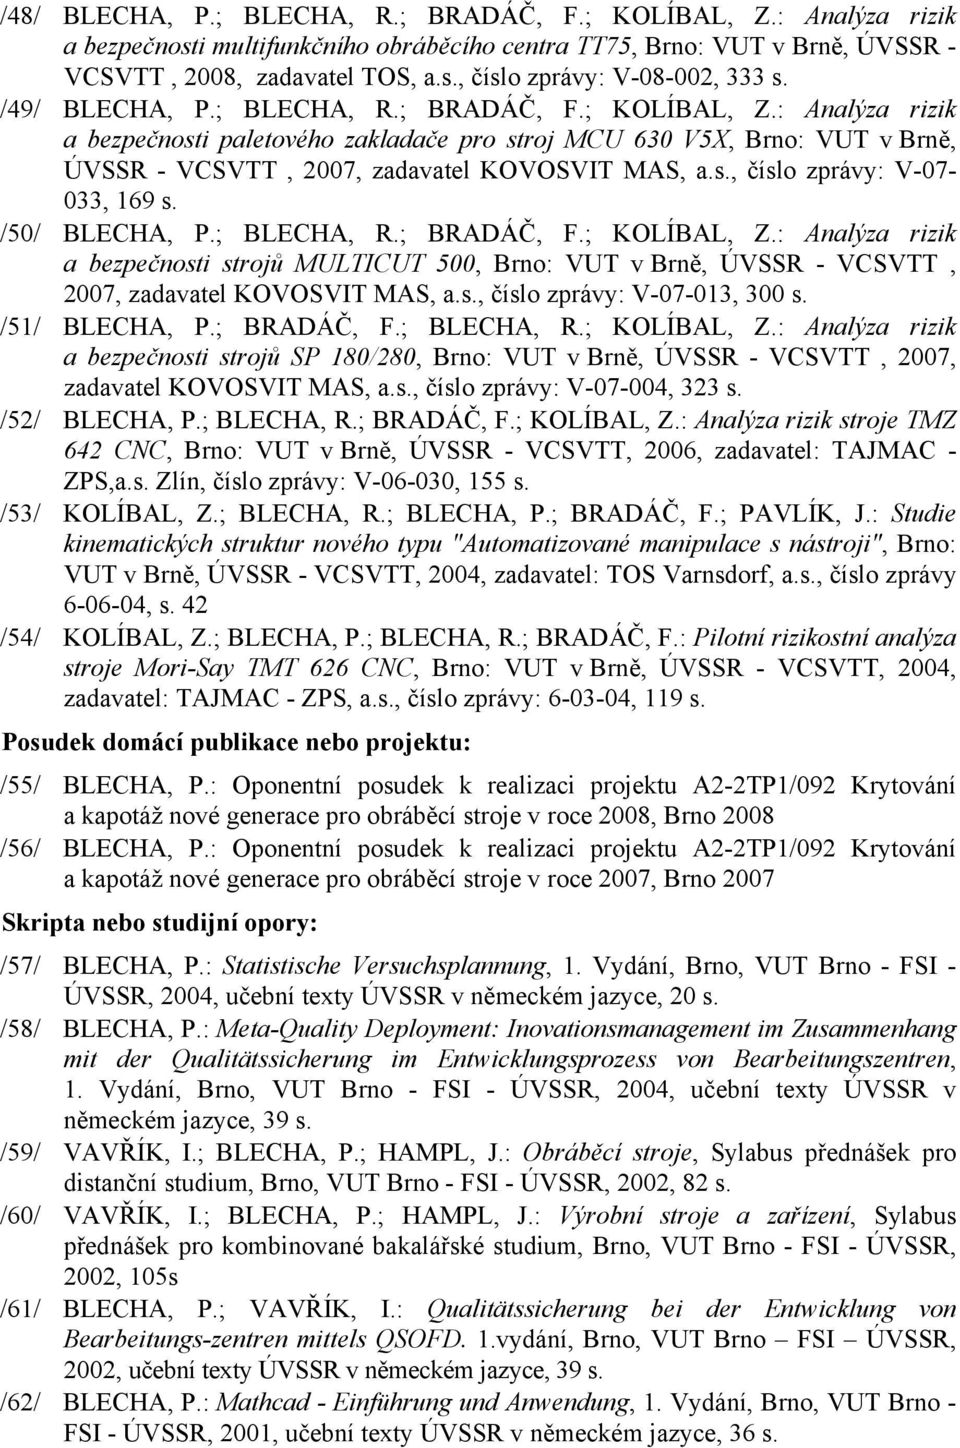 /50/ BLECHA, P.; BLECHA, R.; BRADÁČ, F.; KOLÍBAL, Z.: Analýza rizik a bezpečnosti strojů MULTICUT 500, Brno: VUT v Brně, ÚVSSR - VCSVTT, 2007, zadavatel KOVOSVIT MAS, a.s., číslo zprávy: V-07-013, 300 s.